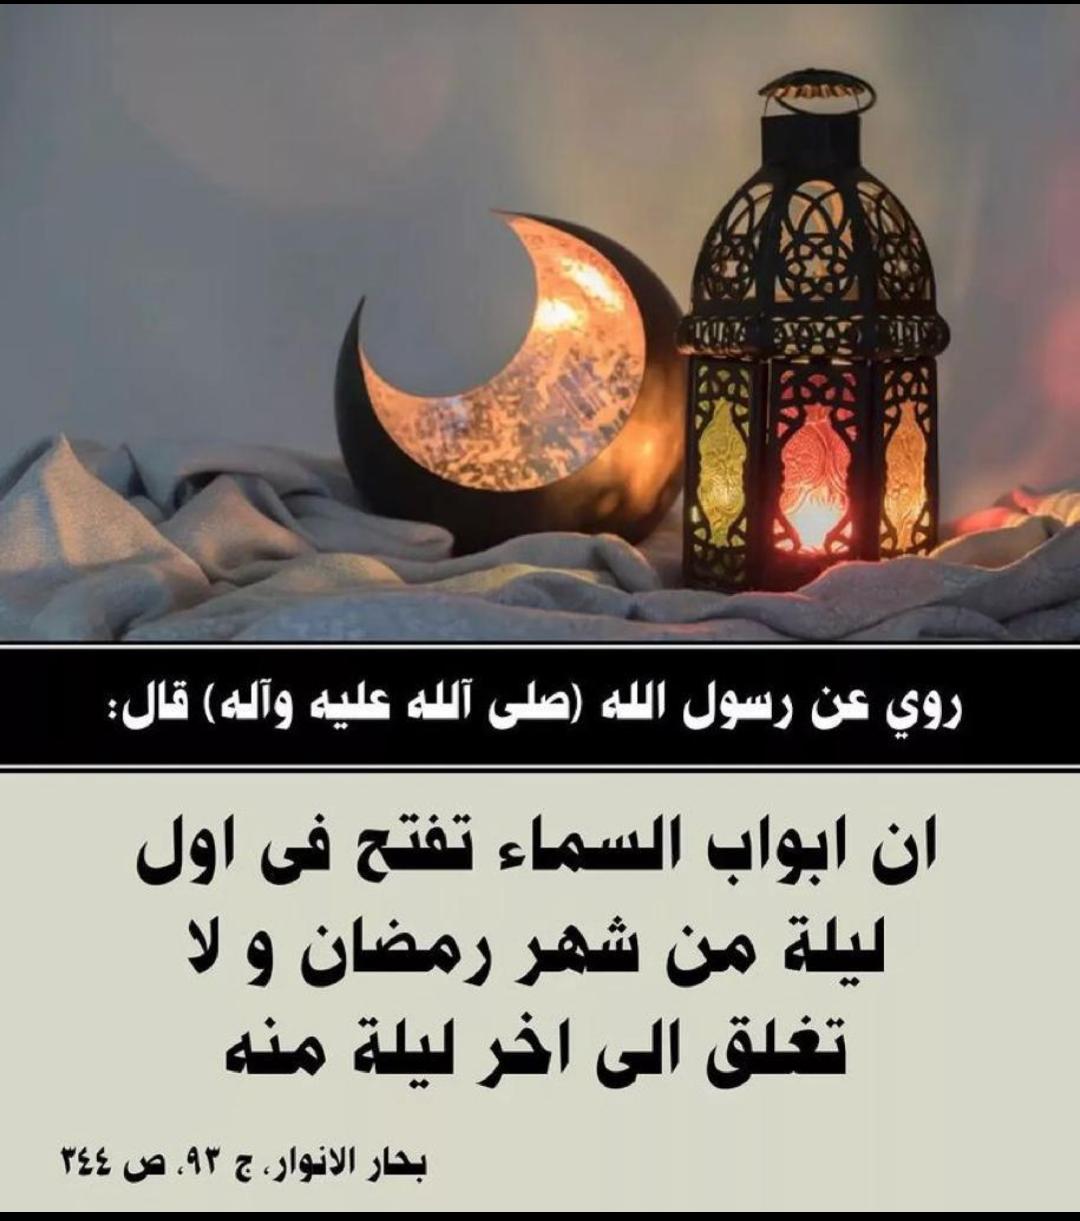 ان ابواب السماء تفتح في اول ليلة من شهر رمضان ولا تغلق الى آخرليلة منه